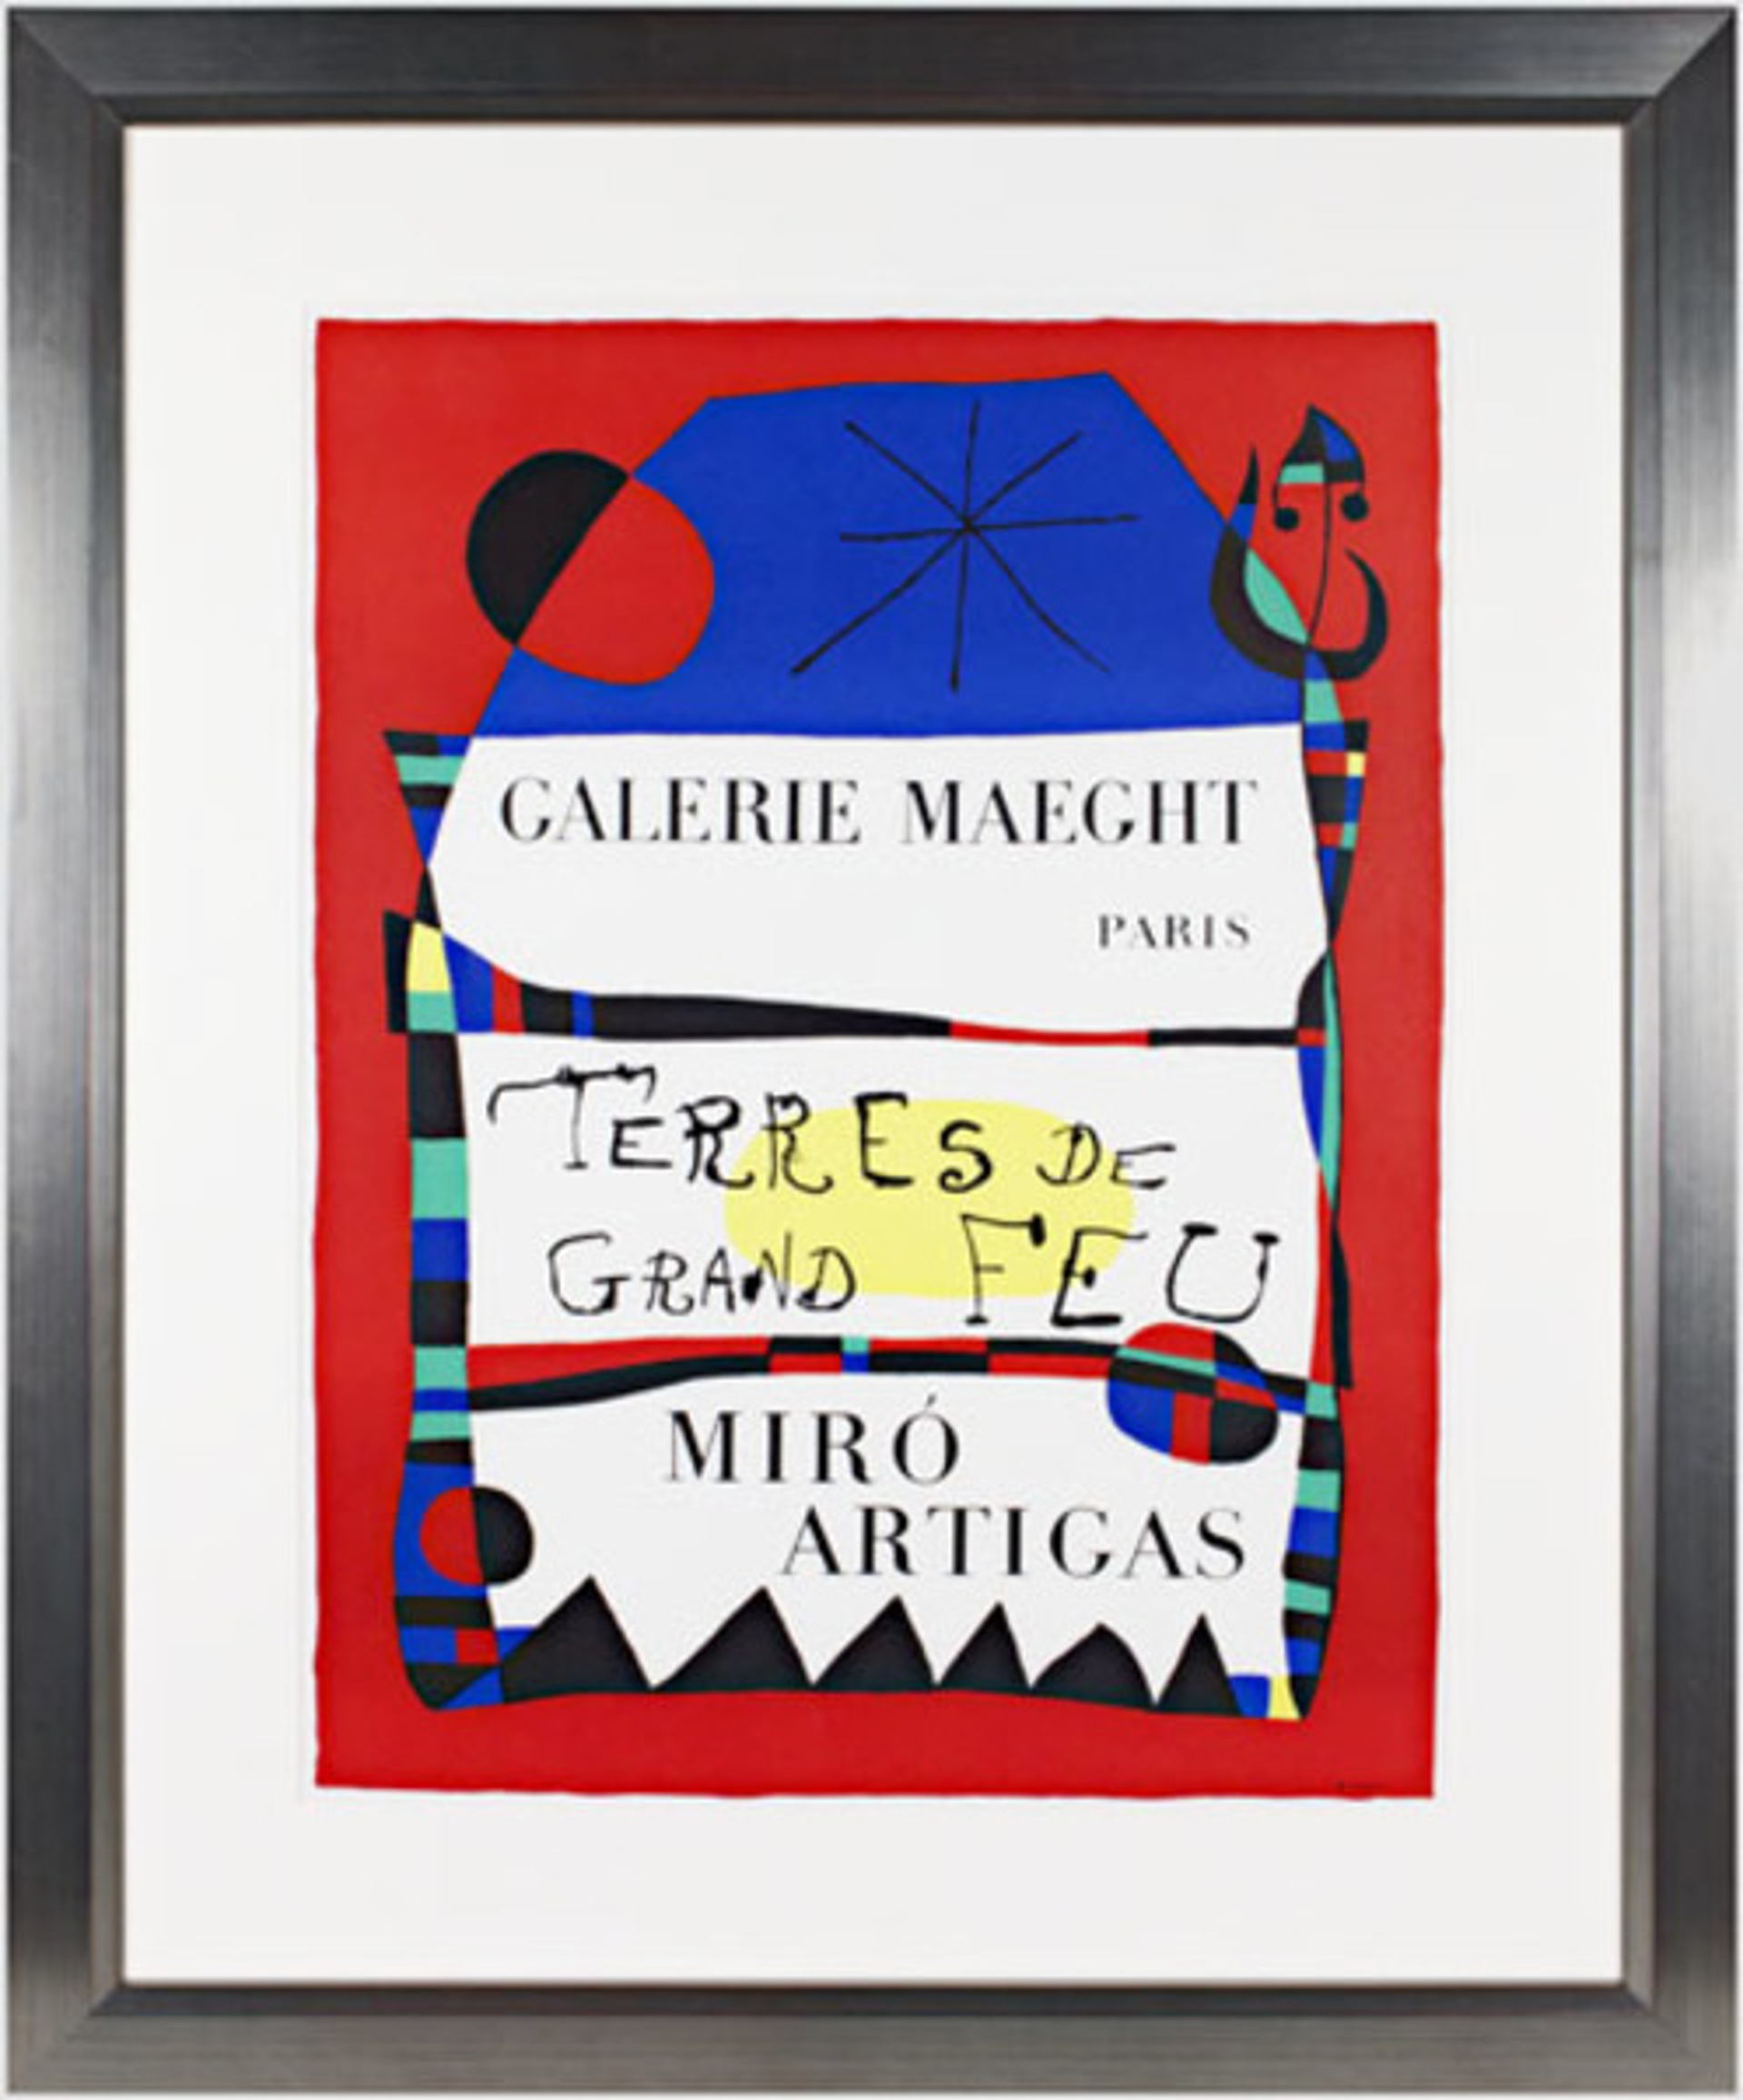 Terres de Grande Feu by Joan Miró